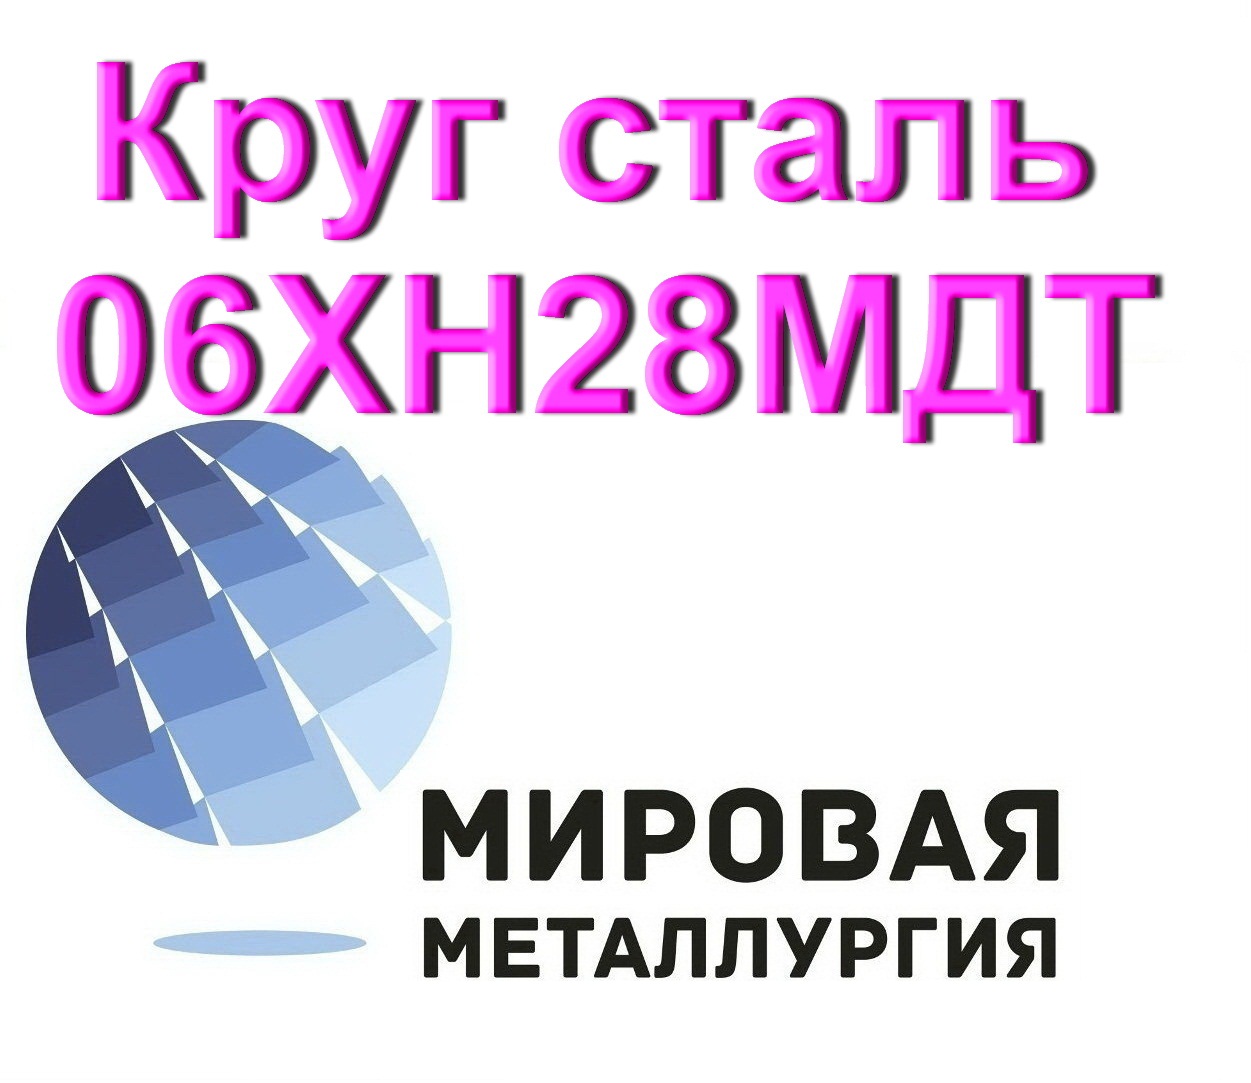 Круг сталь 06ХН28МДТ в городе Екатеринбург, фото 1, телефон продавца: +7 (343) 202-21-64